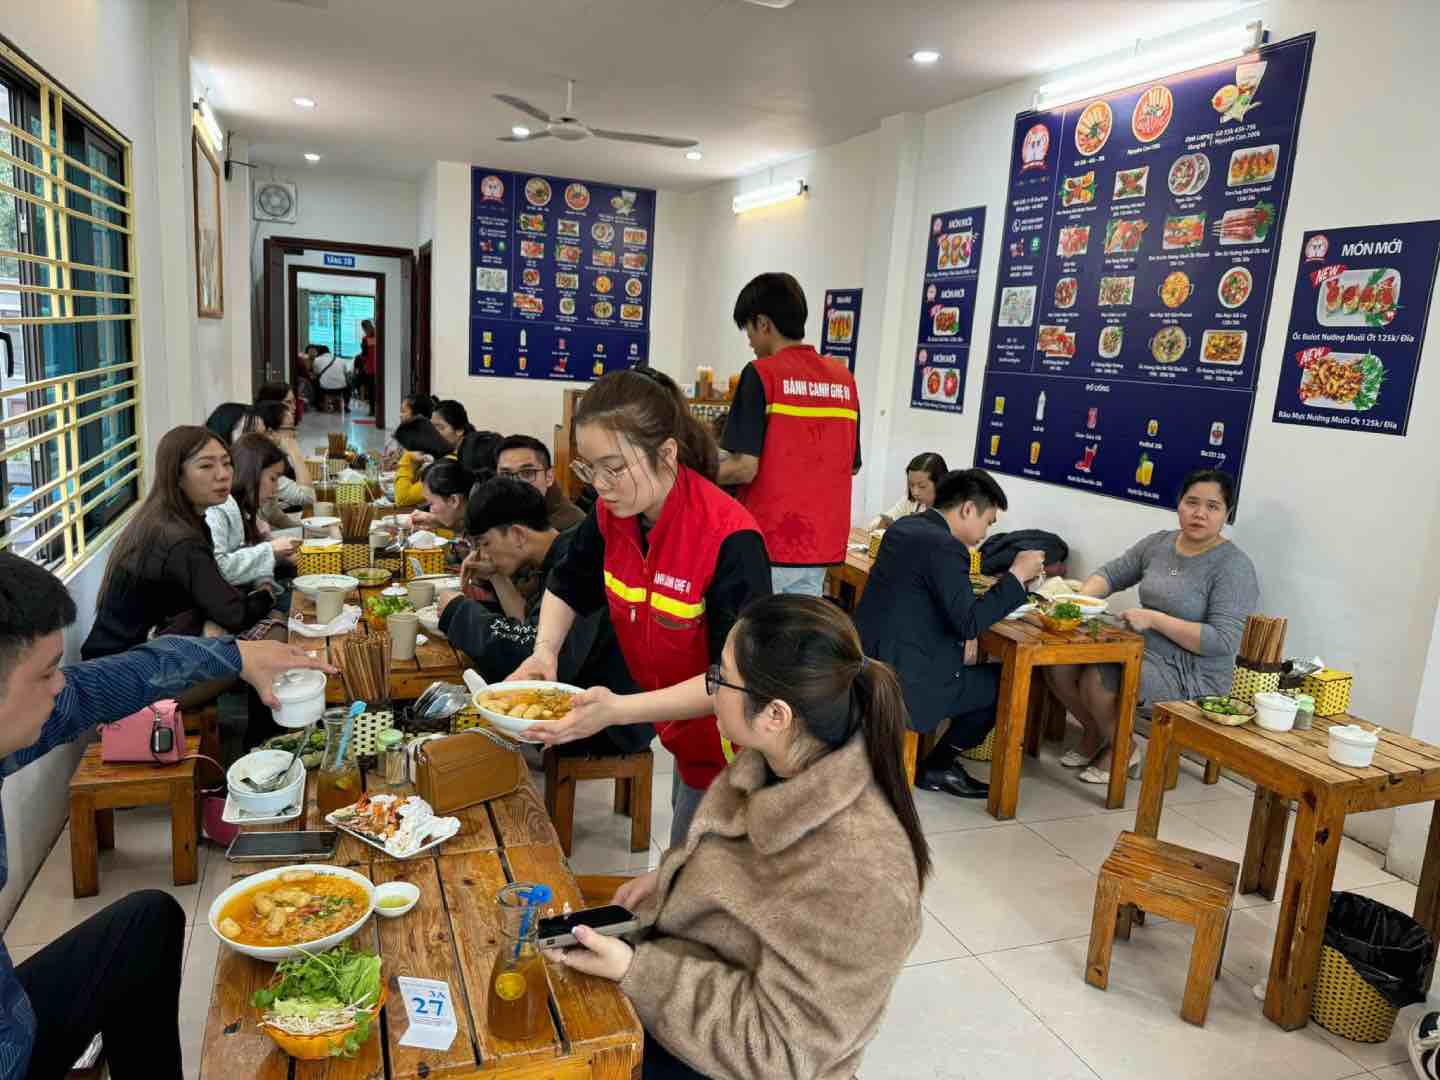 Một quán ăn trên phố Ô Chợ Dừa (Đống Đa) đã chật kín khách cả 2 tầng, nhân viên phải làm việc liên tục. Ảnh: Nhật Minh